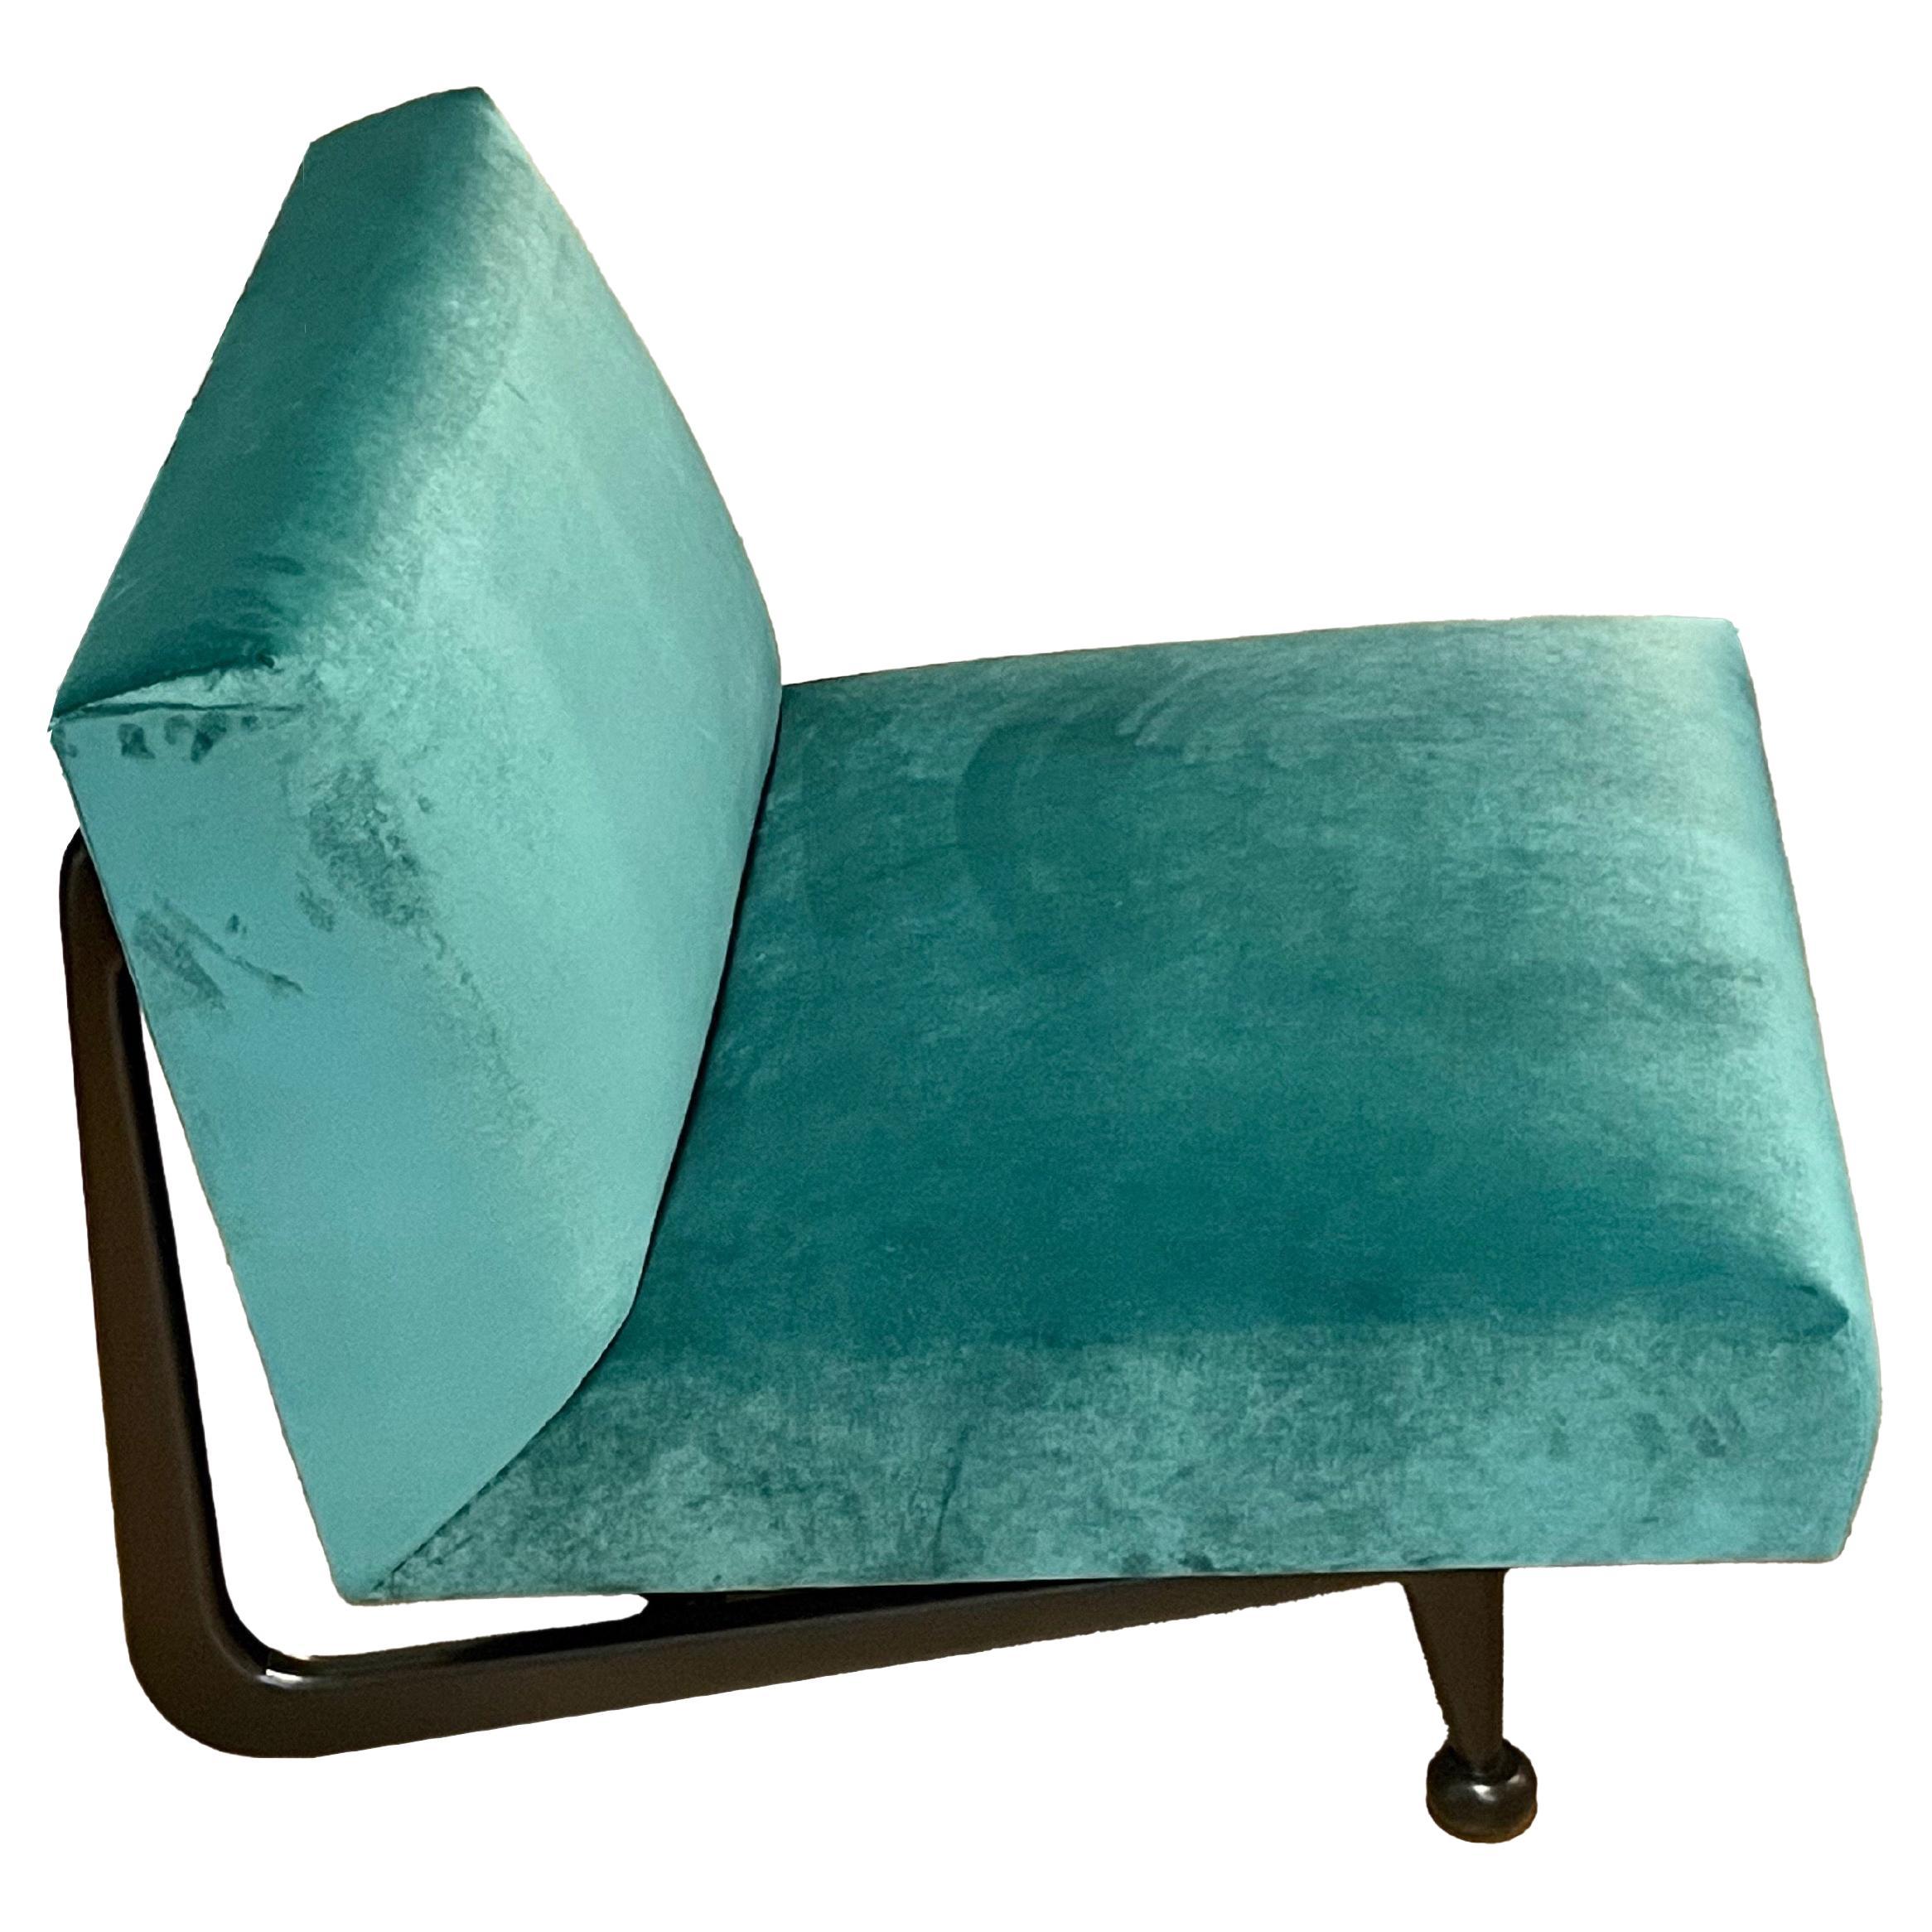 Custom Teal MLB Garbo slip chair
Upholstered in Teal Velvet
COM available